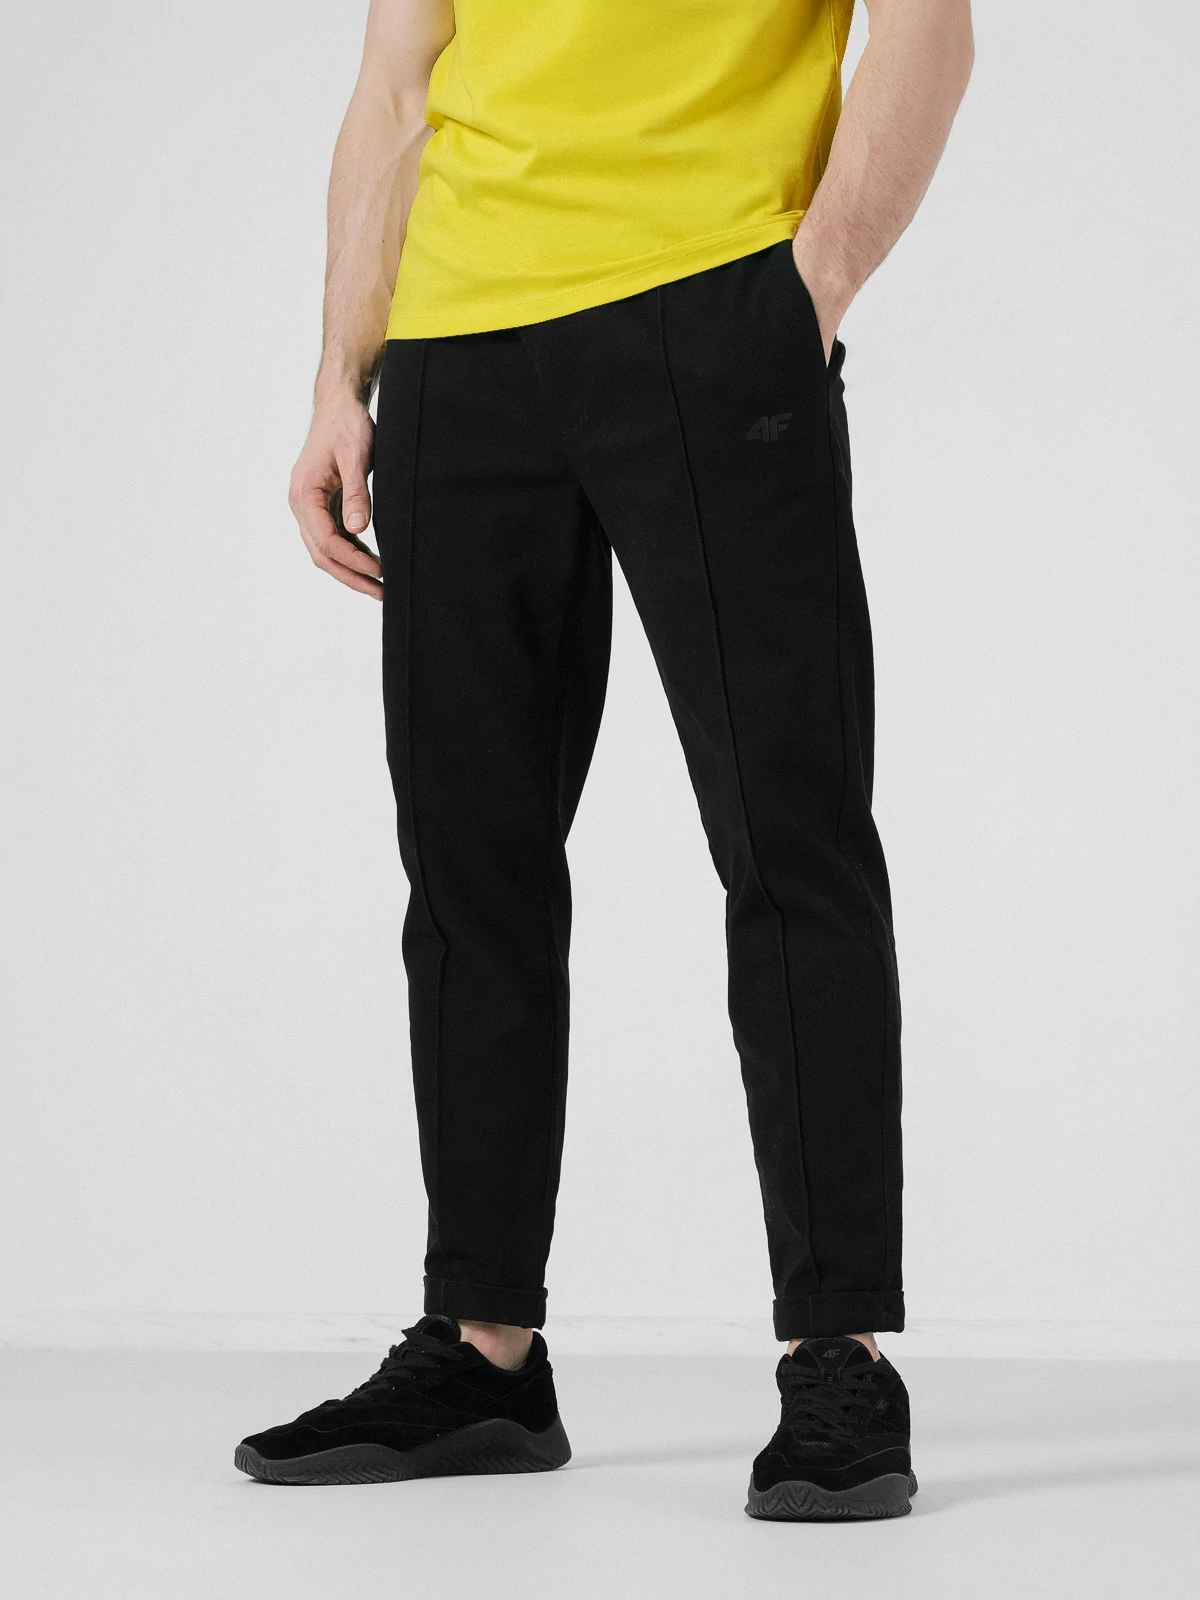 Peer beam Recite Pantaloni casual cu cracii suflecați pentru bărbați culoare negru | 4F -  Haine sport și încălțăminte